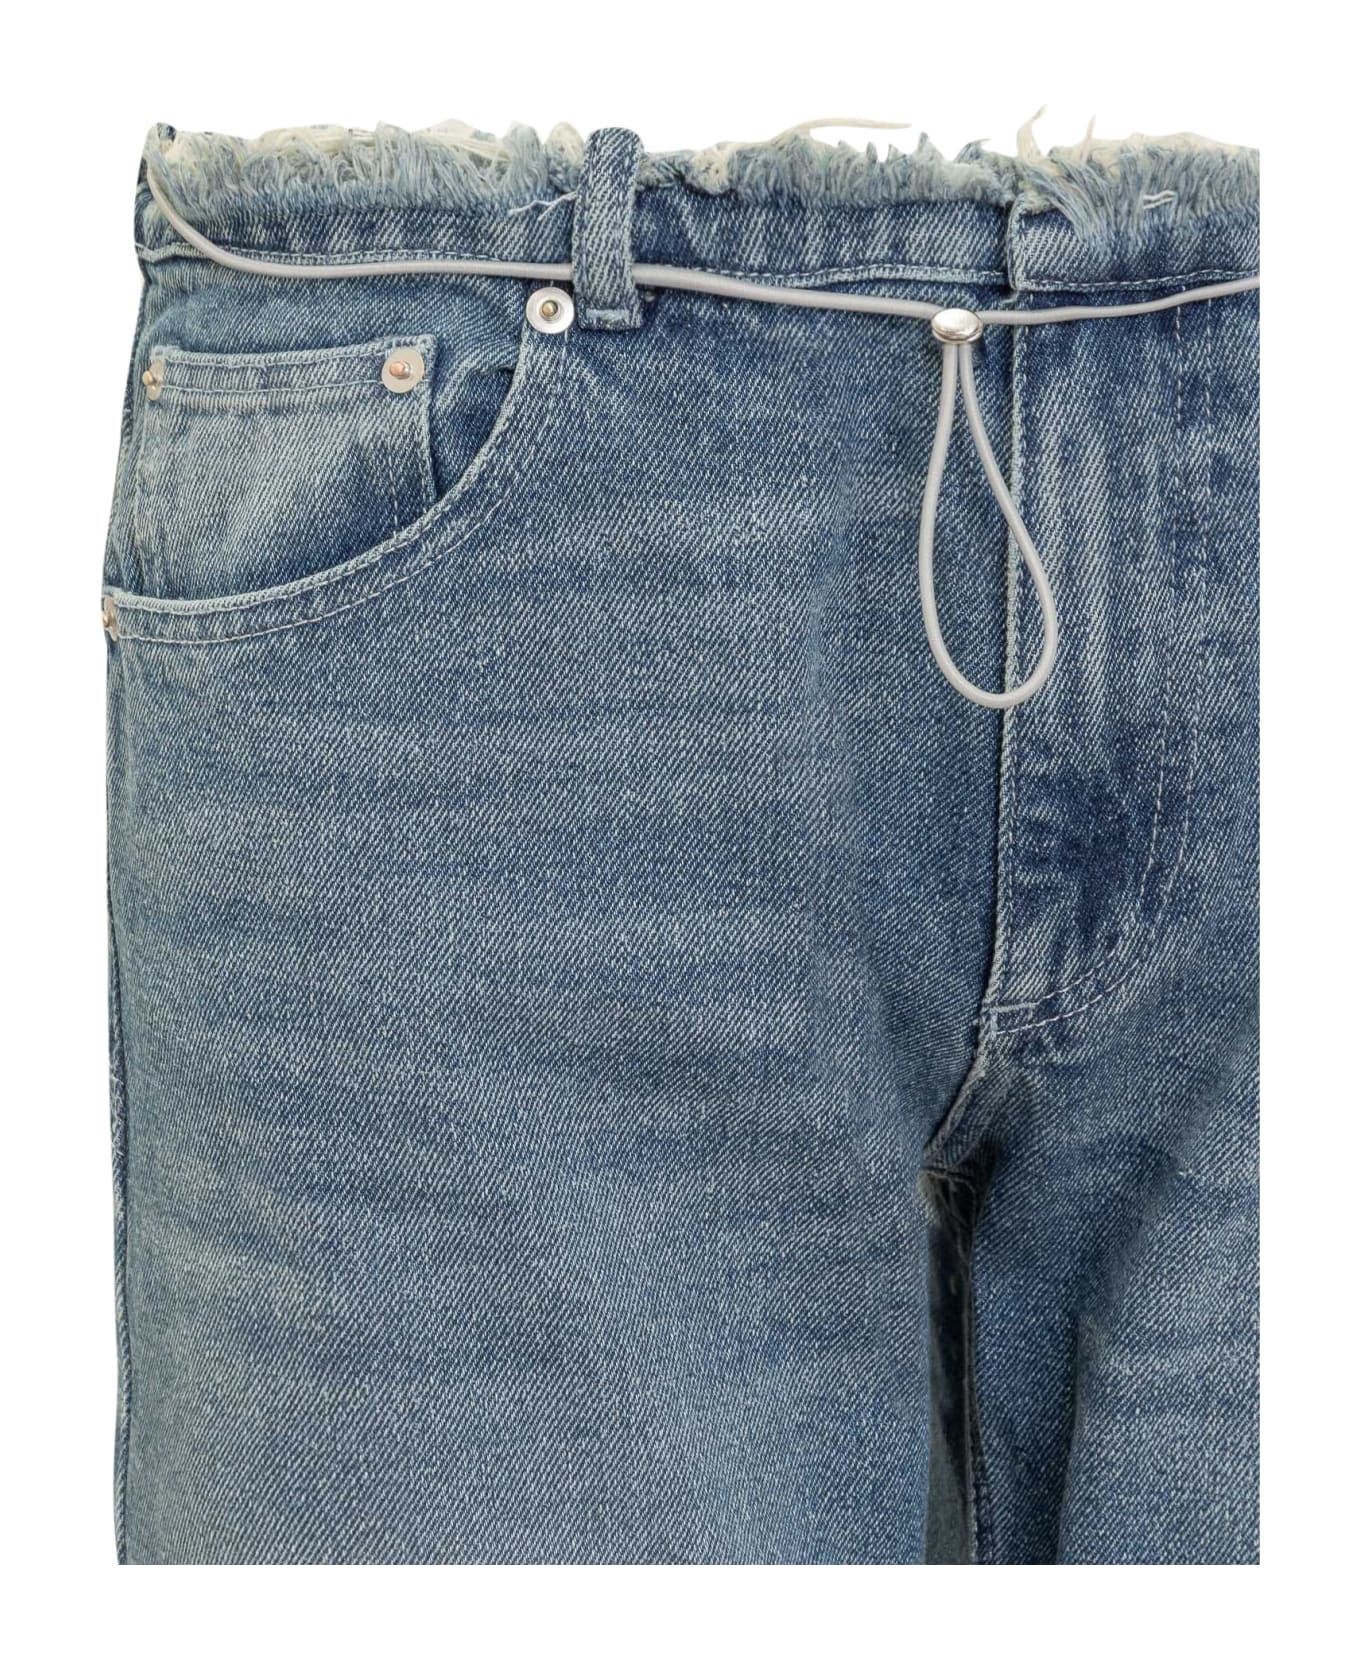 Cormio Long Jeans - Blue Denim デニム